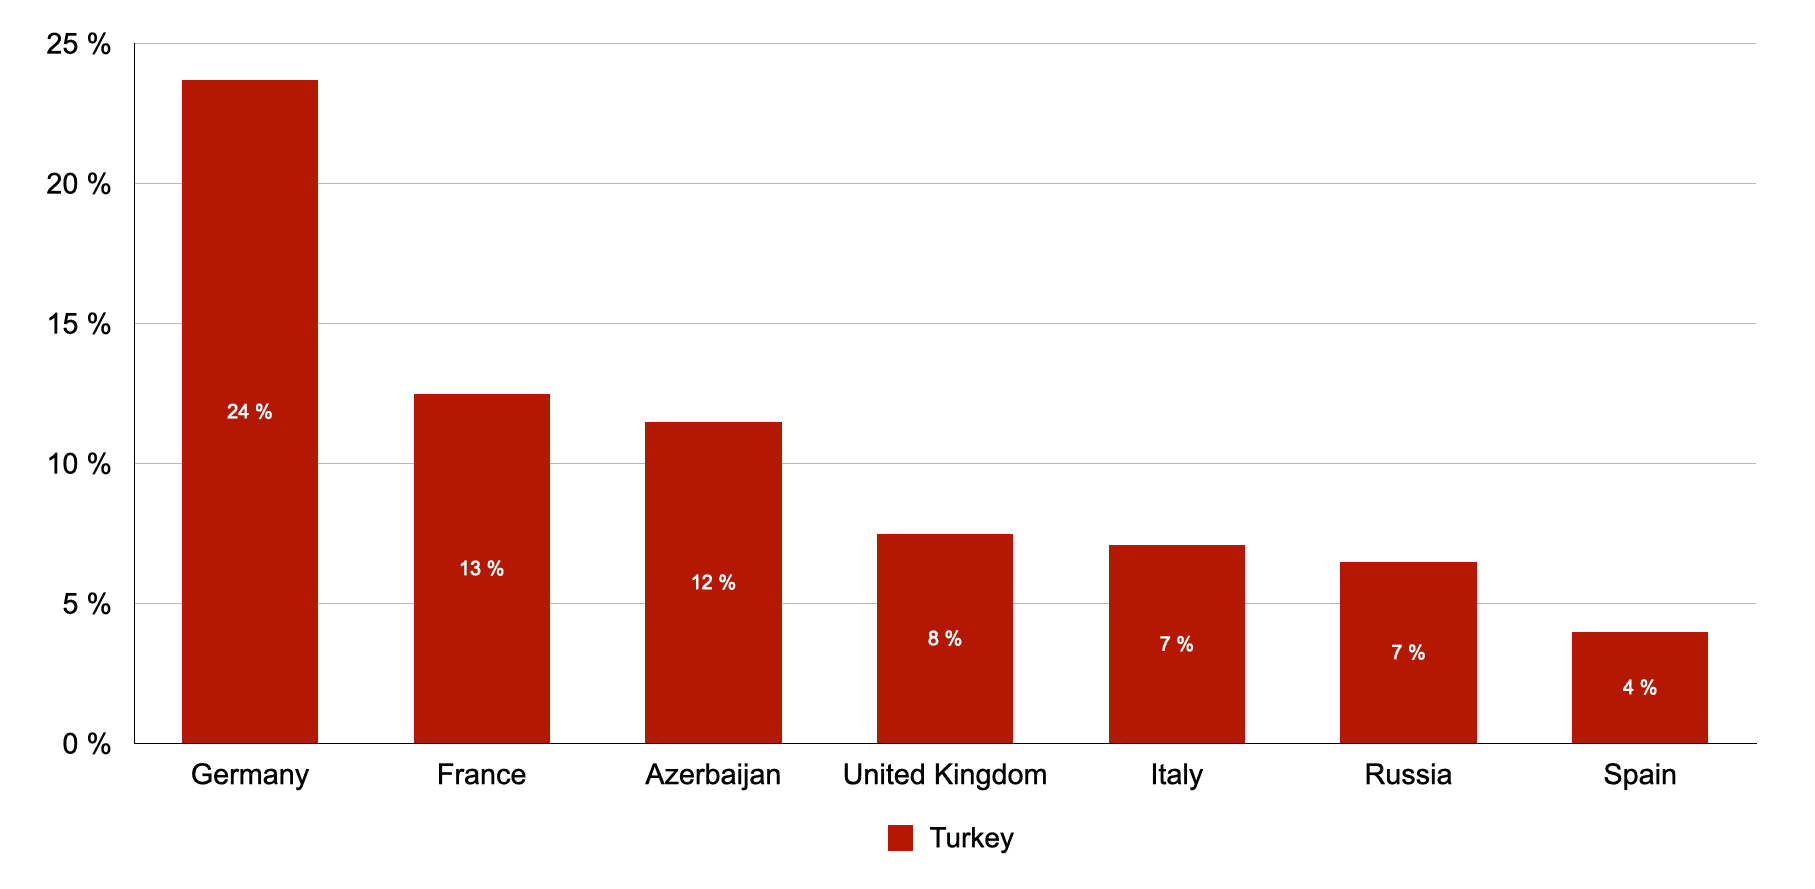 Germany: 24%, France : 13%, Azerbaijan: 12%, United Kingdom: 8%, Italy: 7%, Russia: 7%, Spain: 4%